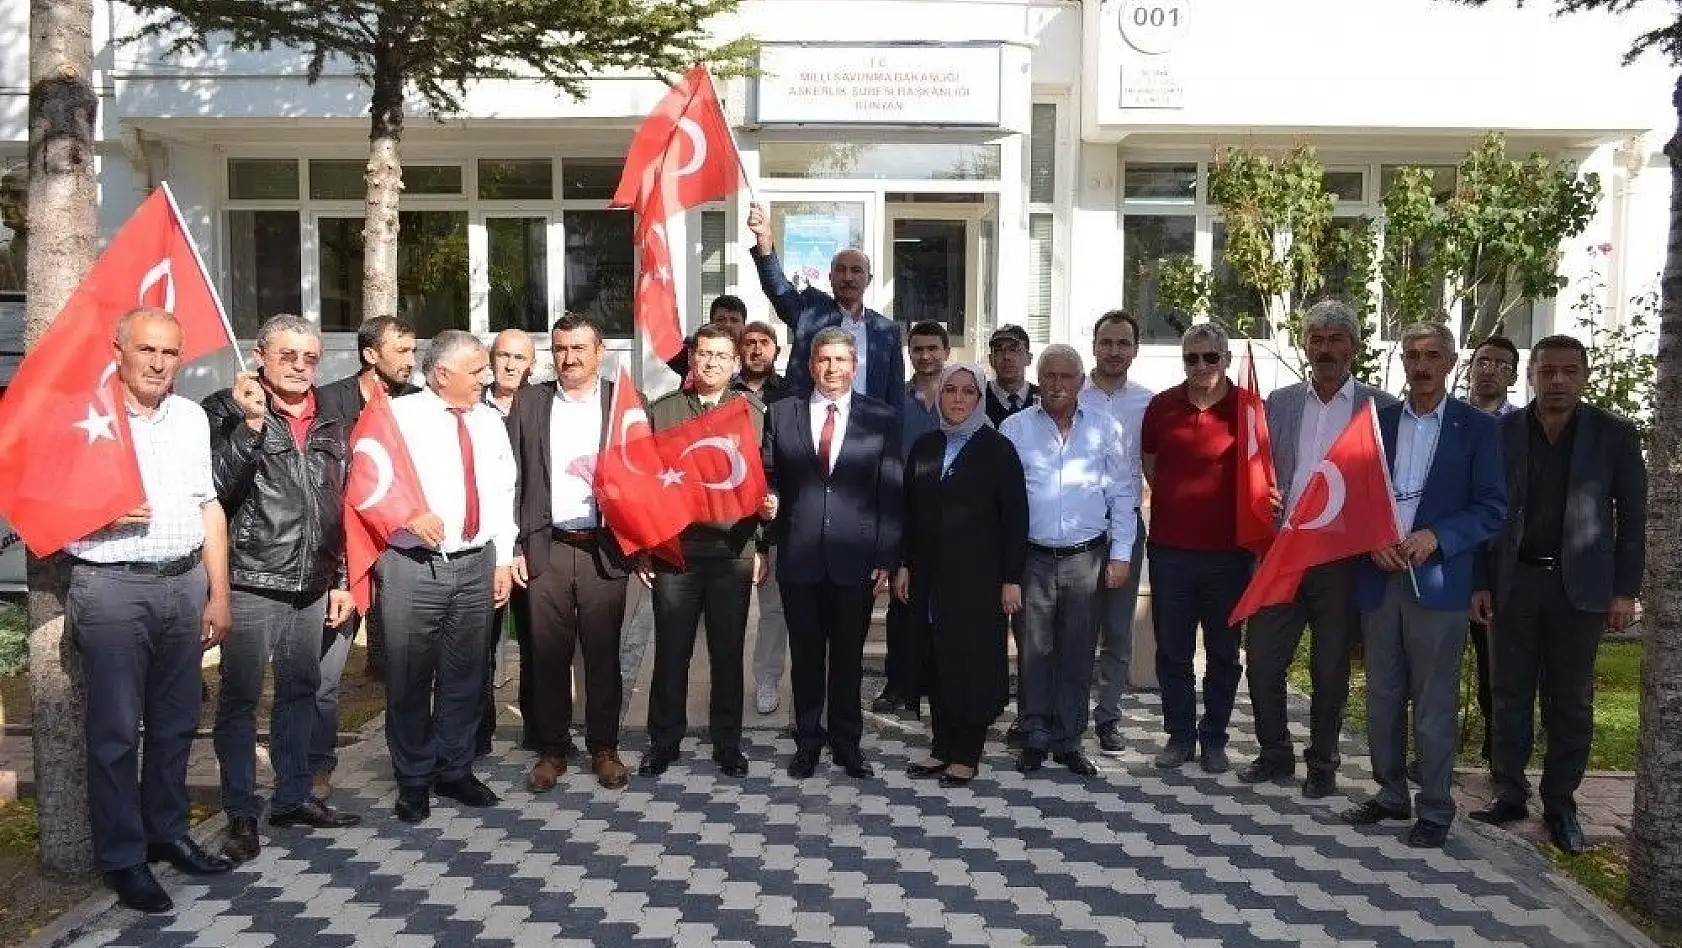 Bünyan Belediye Meclisi Barış Pınarı Harekatına Katılmak İçin Gönüllü Oldu
